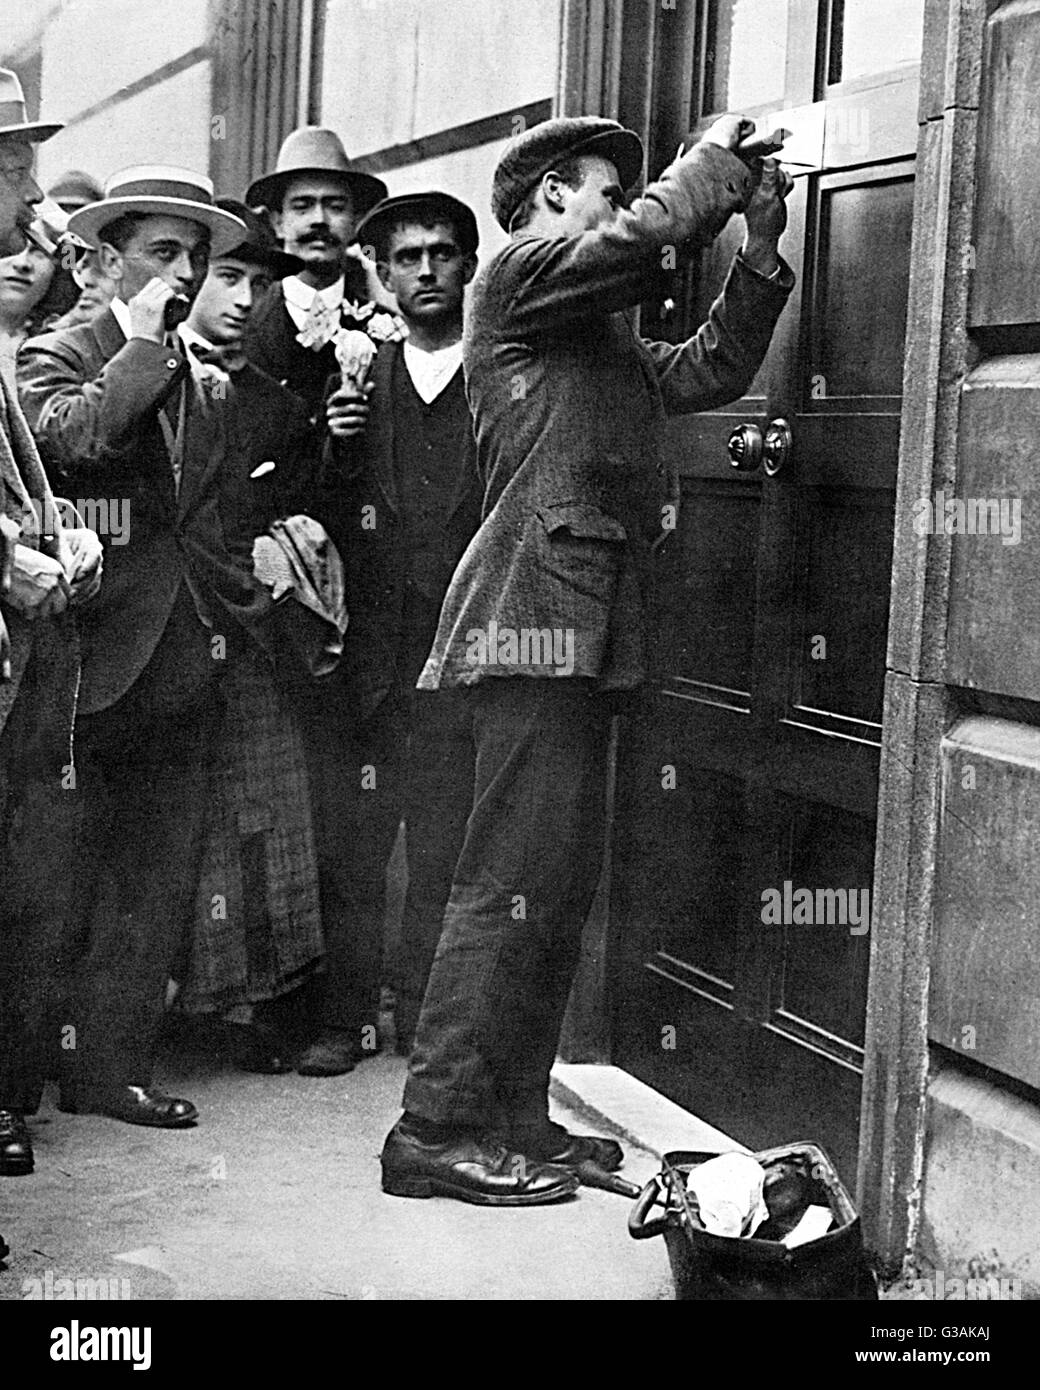 Un segno di relazioni diplomatiche rompendo con lo scoppio della Prima Guerra Mondiale è stato il distacco della lastra di ottone presso l'Ambasciata Tedesca a Londra. Questo a seguito della partenza del principe Lichnowsky il 6 agosto 1914. Data: 1914 Foto Stock